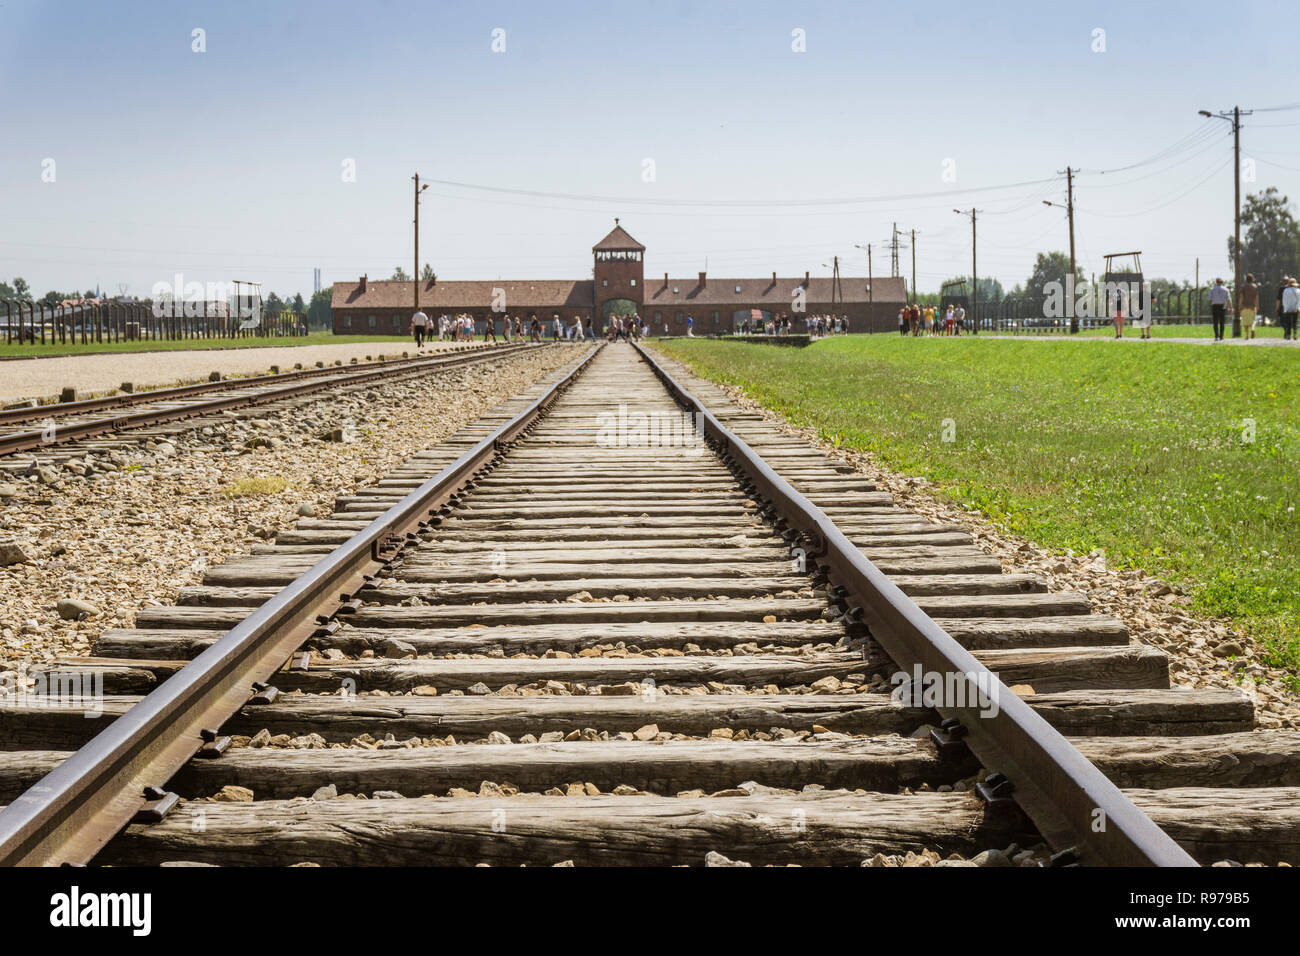 Des chemins de fer de l'entrée principale du camp de concentration d'Auschwitz Birkenau, musée de nos jours, Pologne Banque D'Images